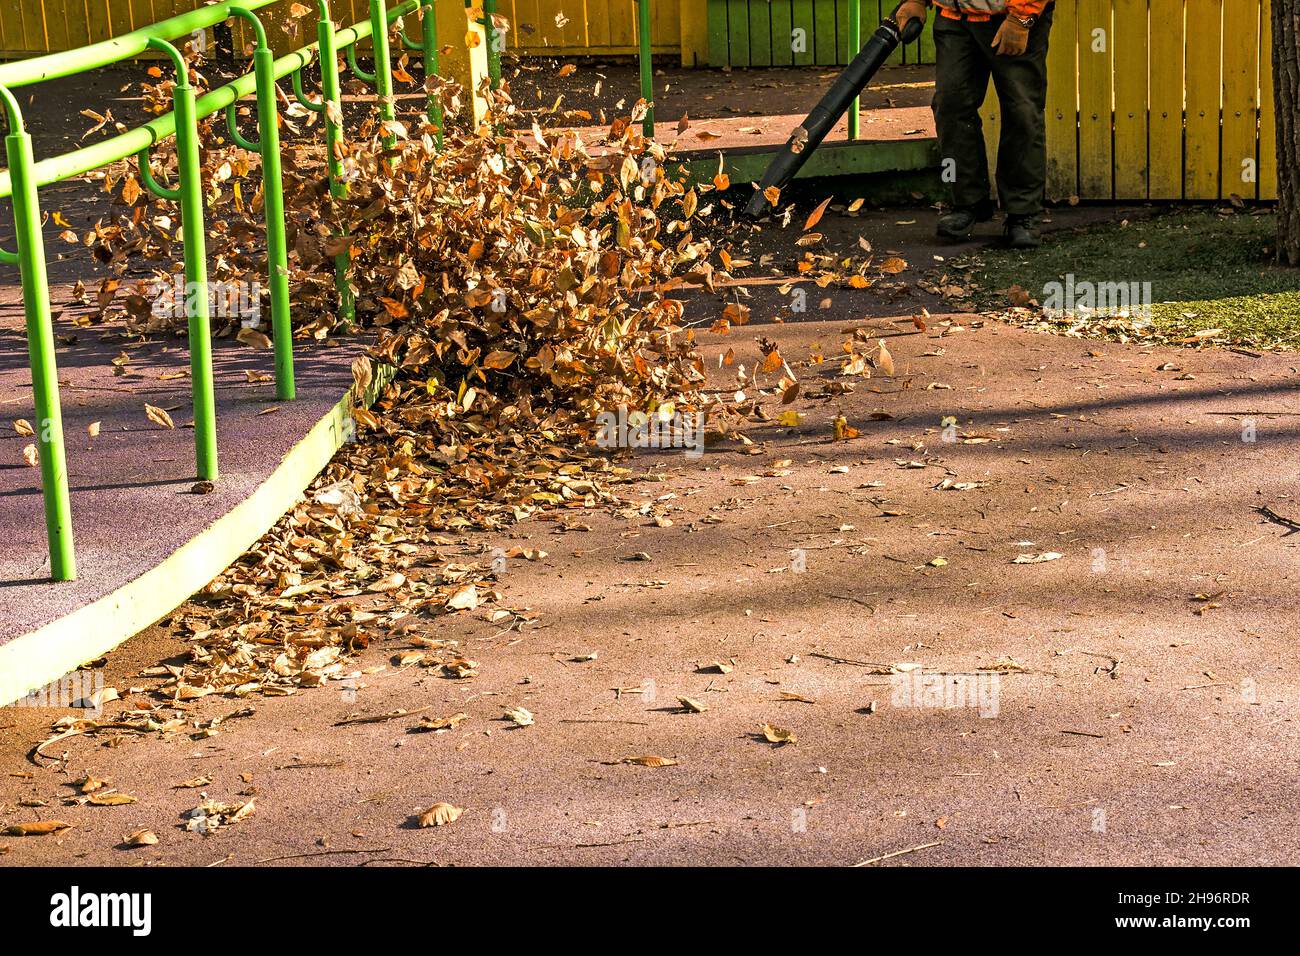 Pulizia foglie secche con un mulino a vento. Un lavoratore municipale pulisce il parco cittadino. Preparazione dei parchi cittadini per l'inverno. Foto Stock